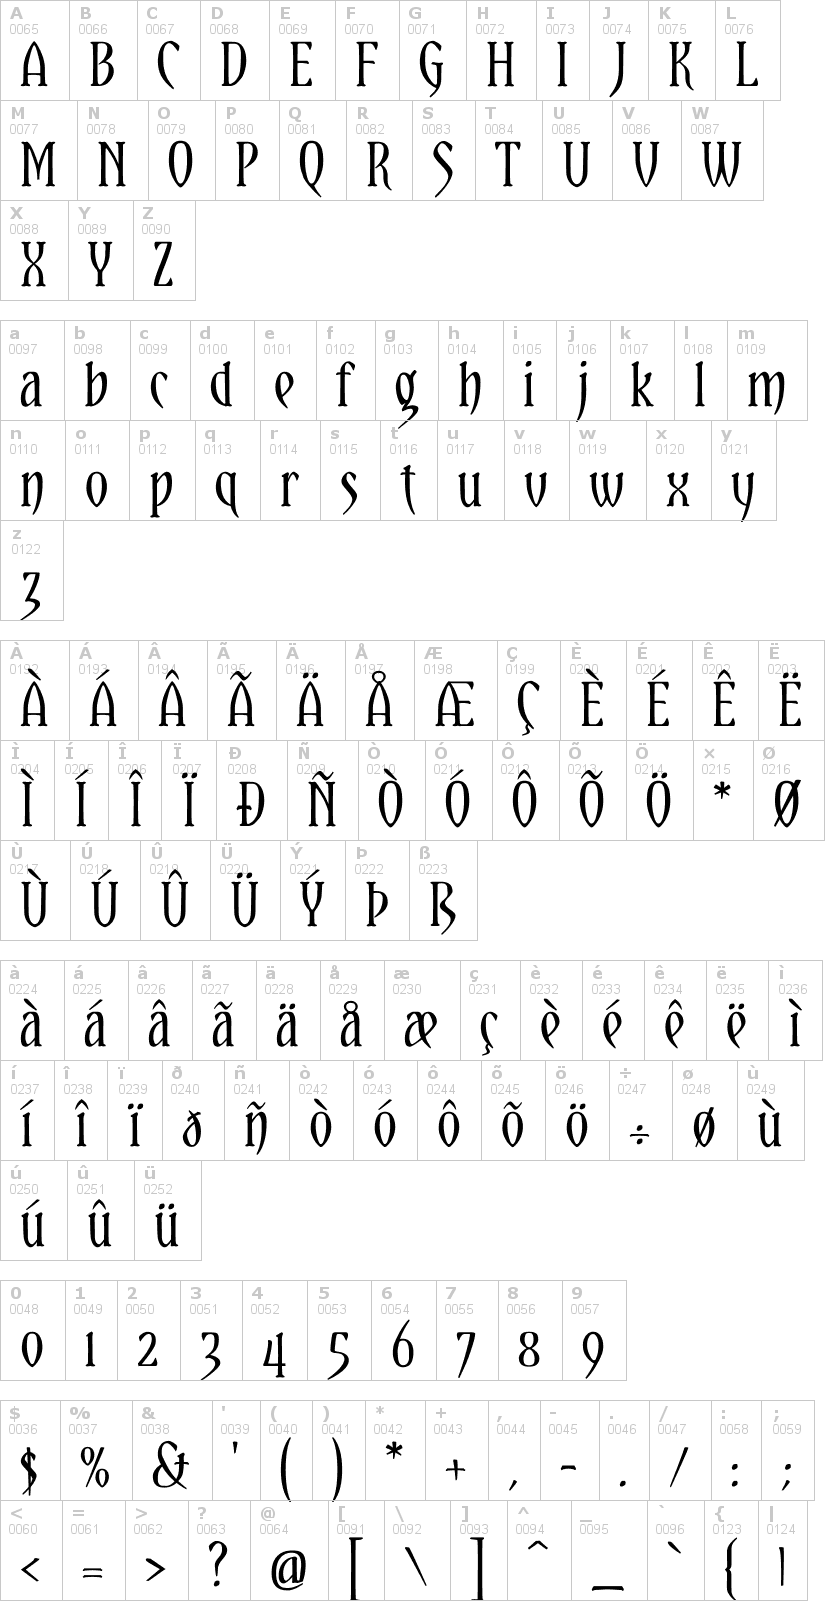 Lettere dell'alfabeto del font yataghan con le quali è possibile realizzare adesivi prespaziati